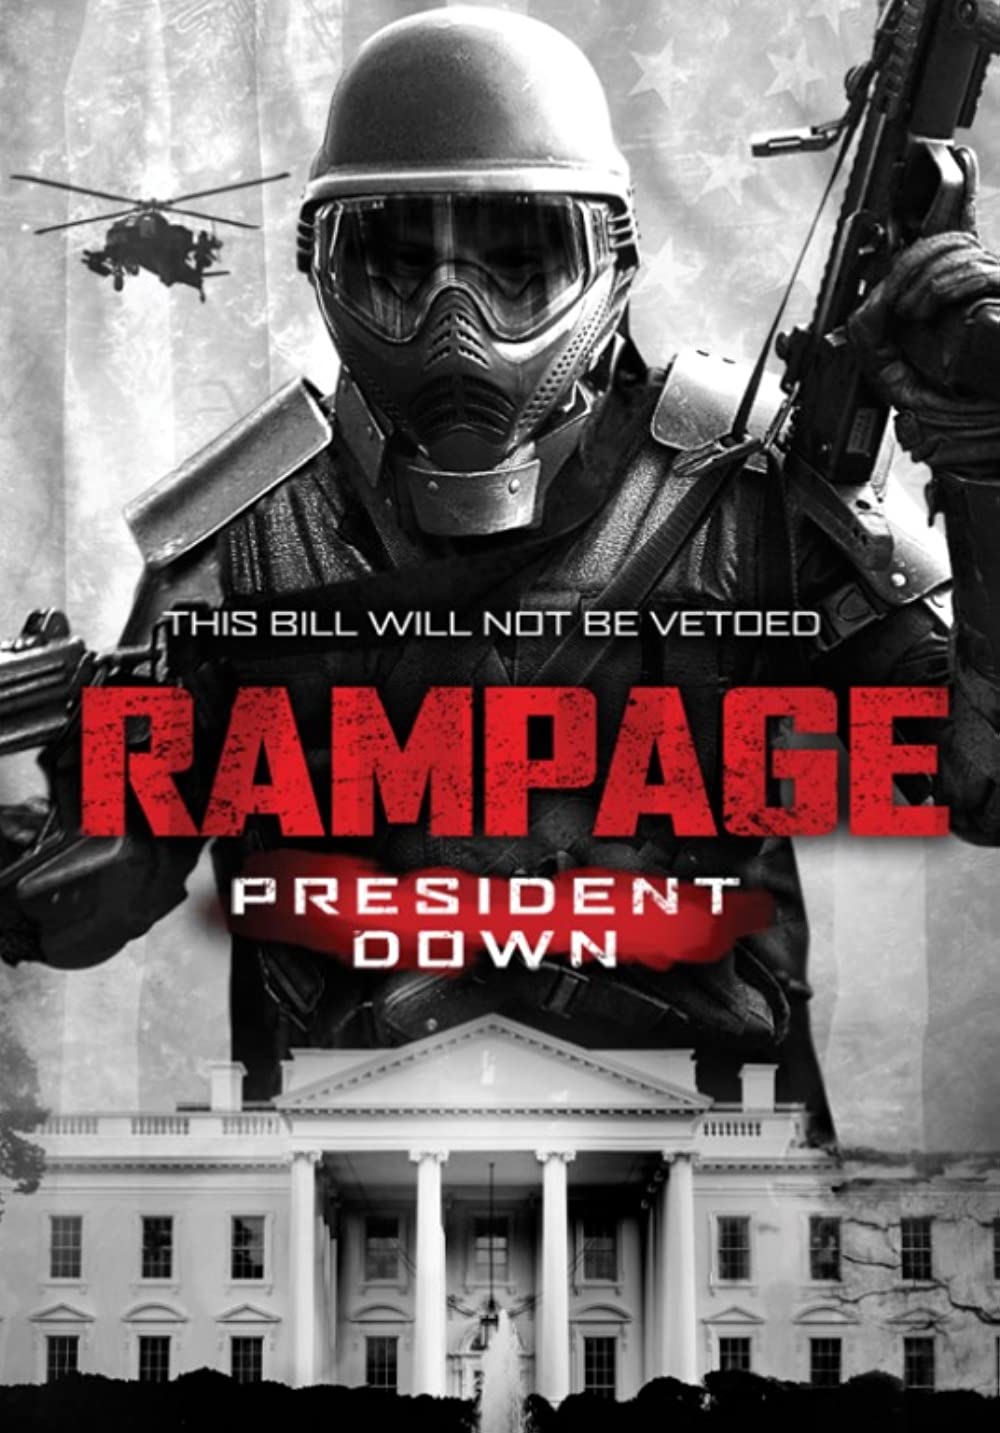 Filmbeschreibung zu Rampage: President Down (2016)